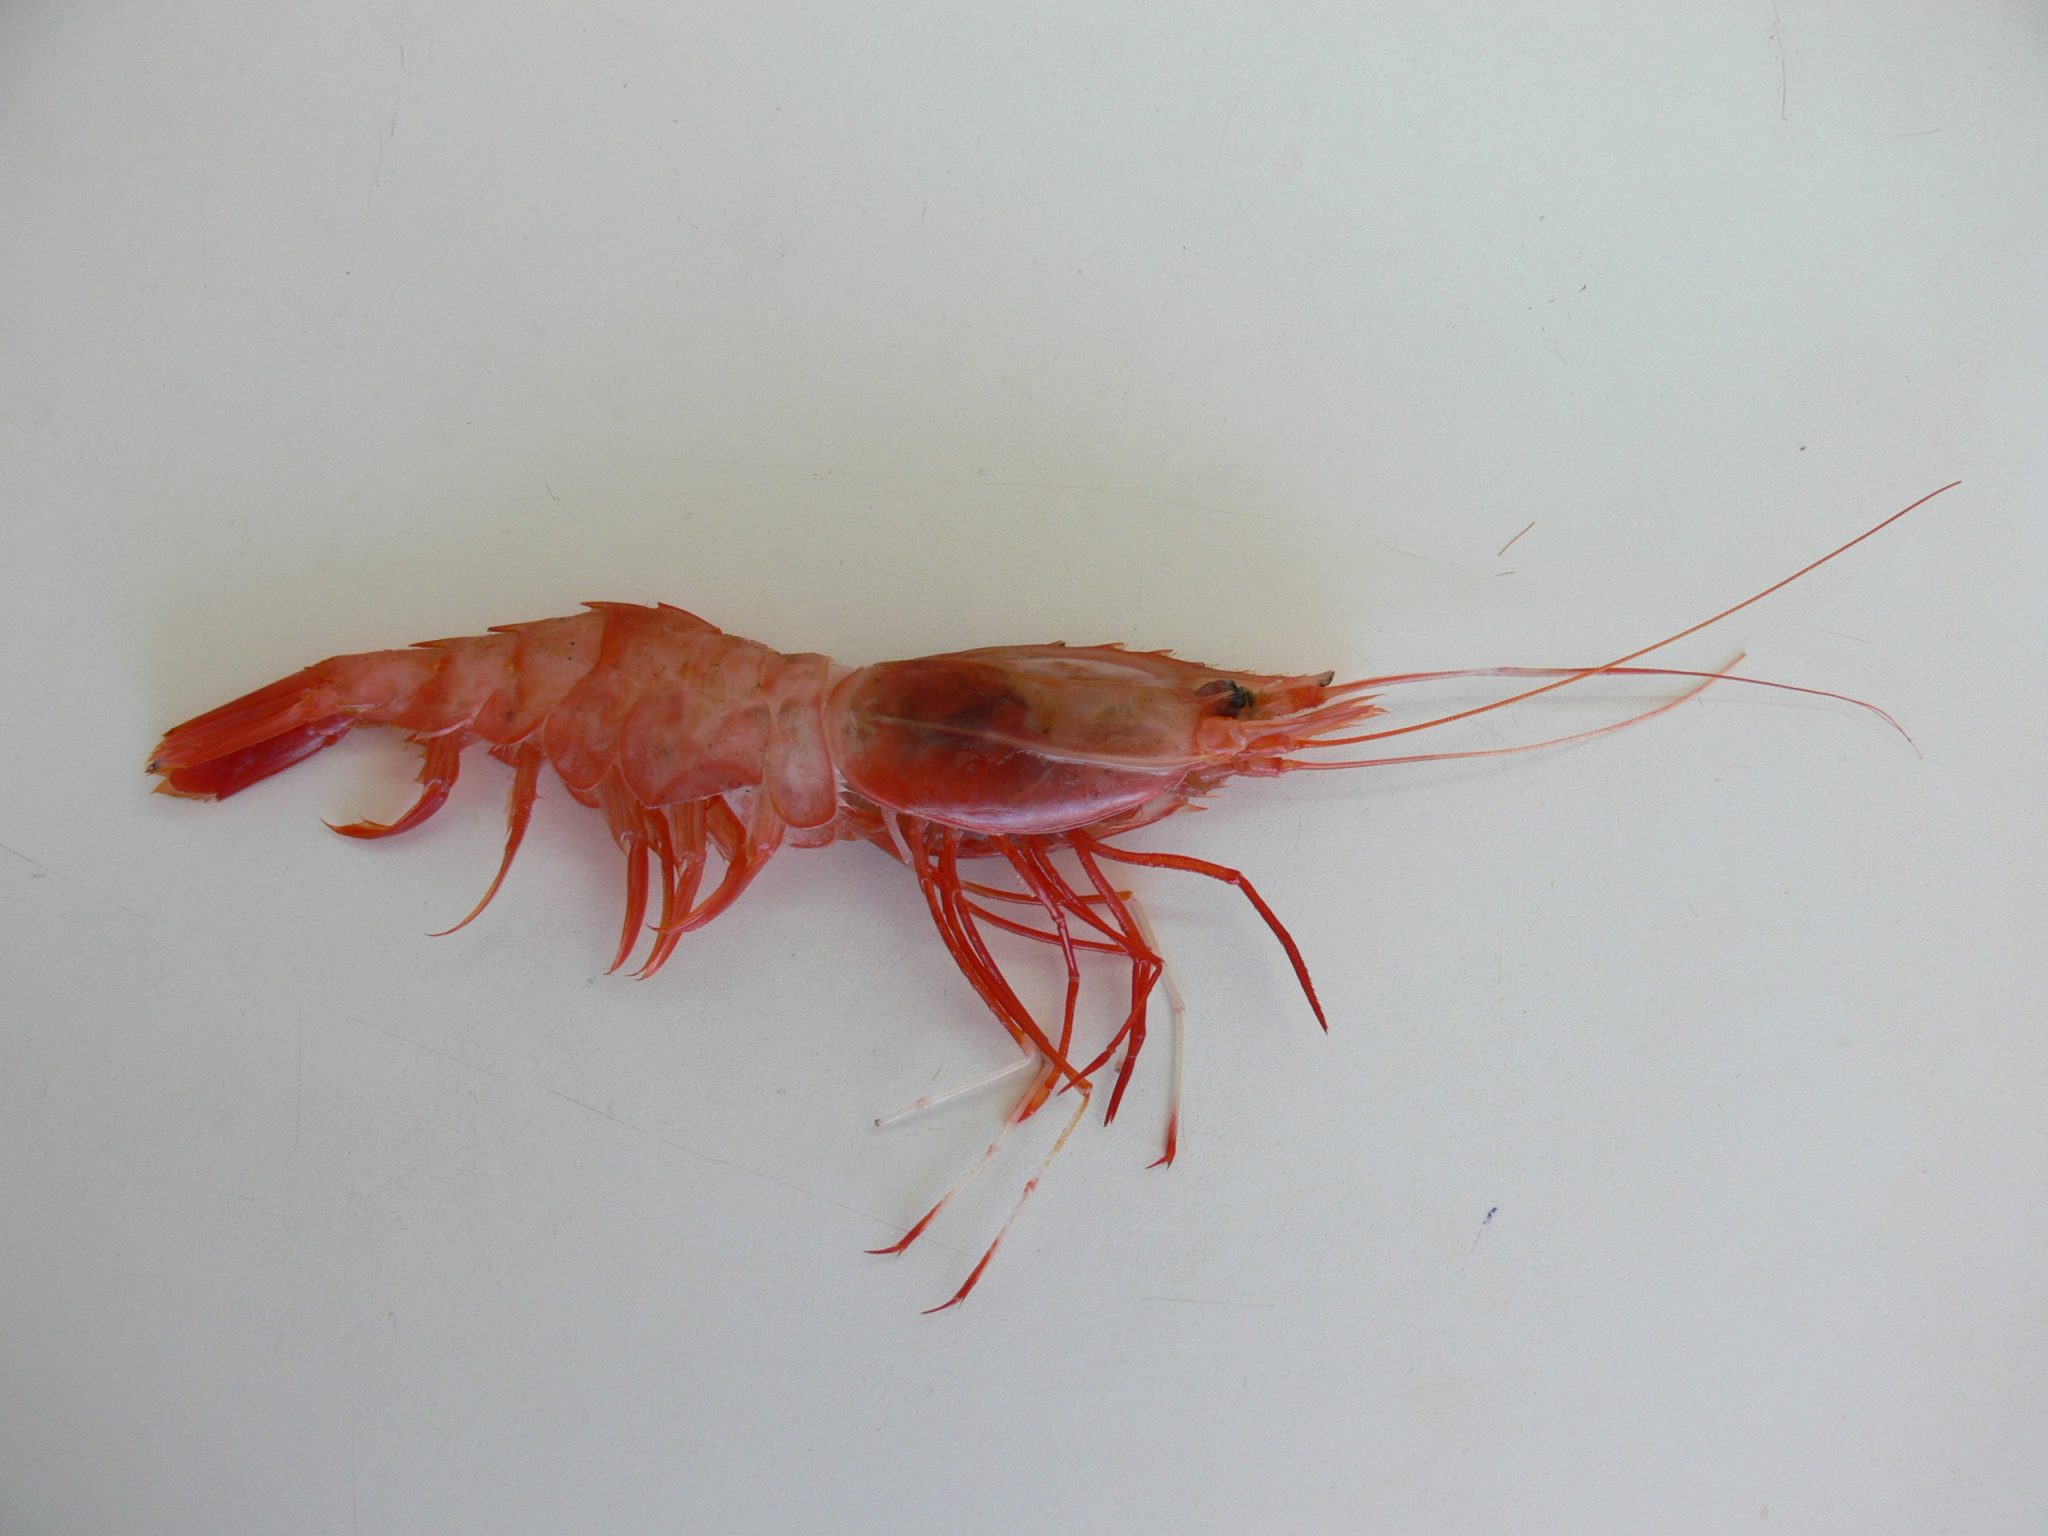 IFOP delivers results on nylon shrimp status between Antofagasta and Bío Bío  regions